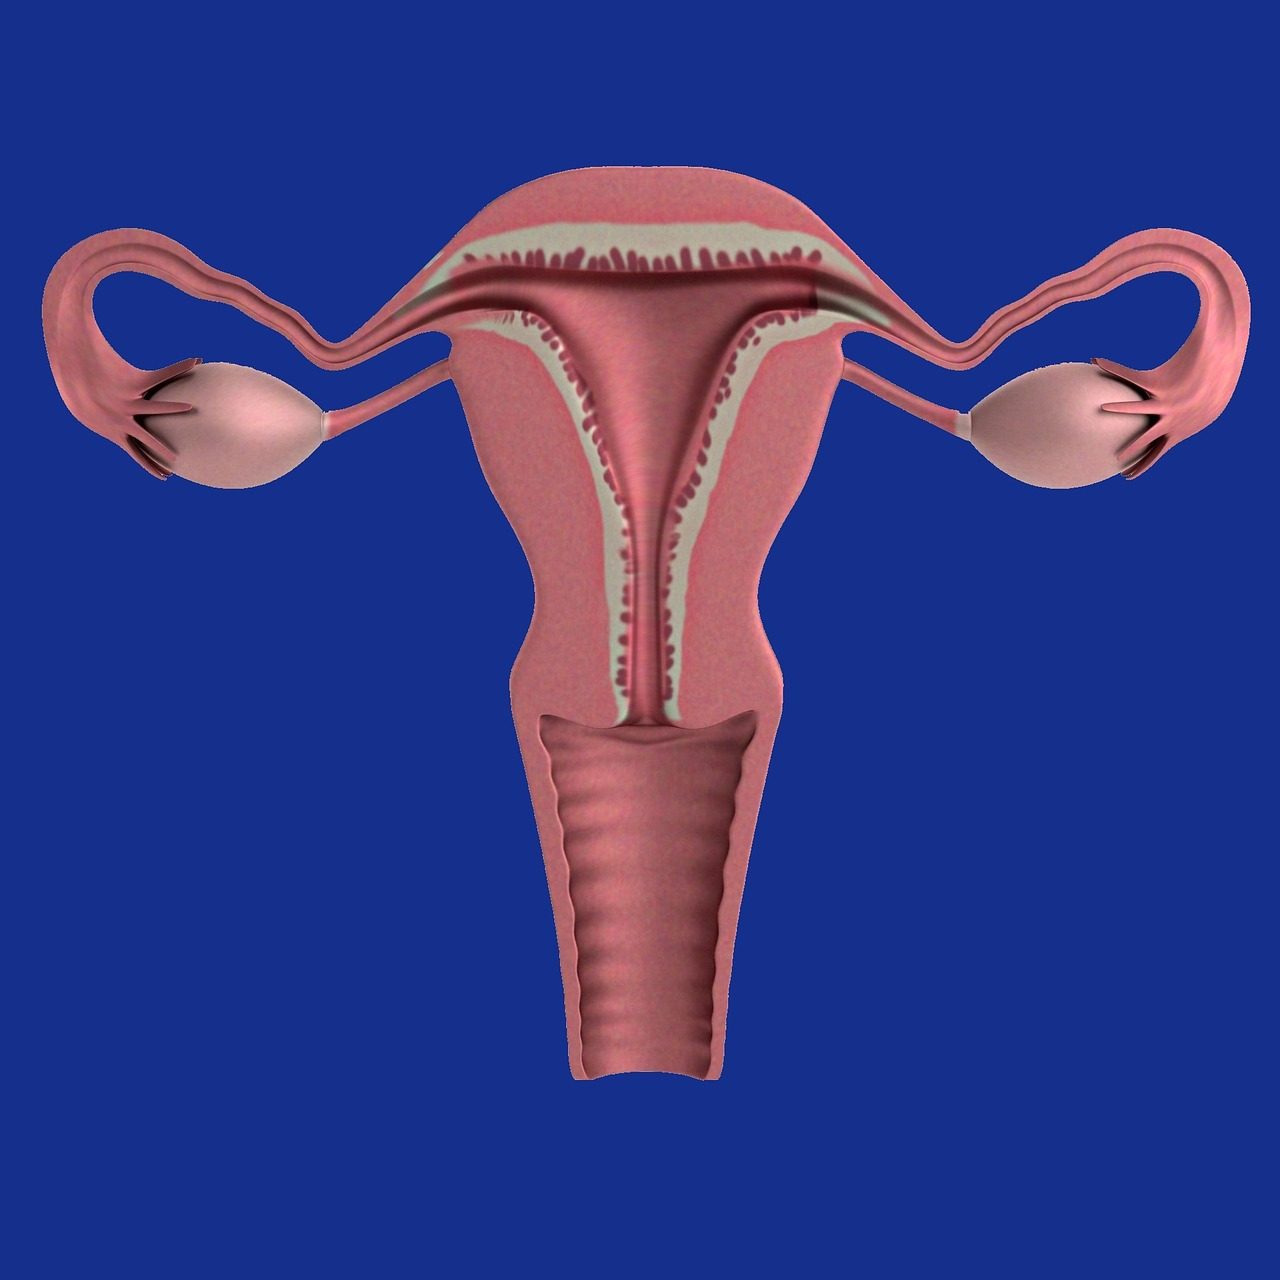 uterus-1089344_1280-1280x1280.jpg